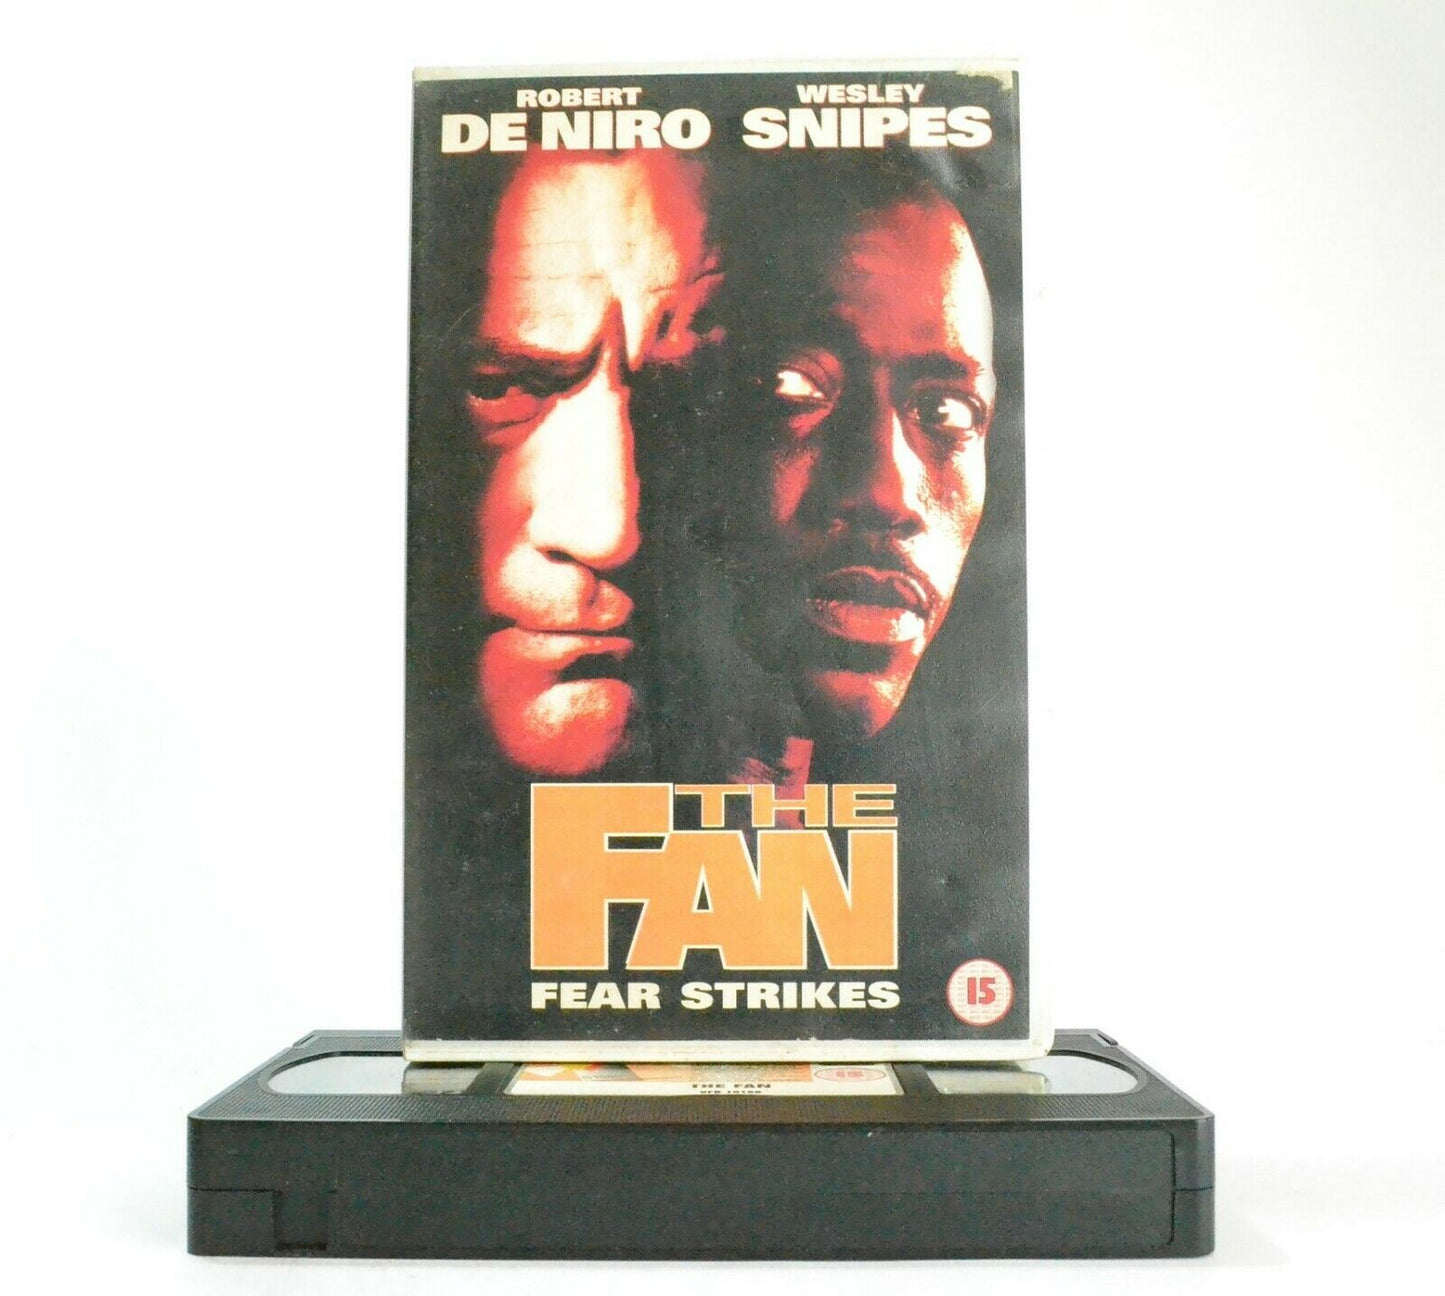 The Fan: Fear Strikes - Sports Psychological Thriller - Robert De Niro - Pal VH-